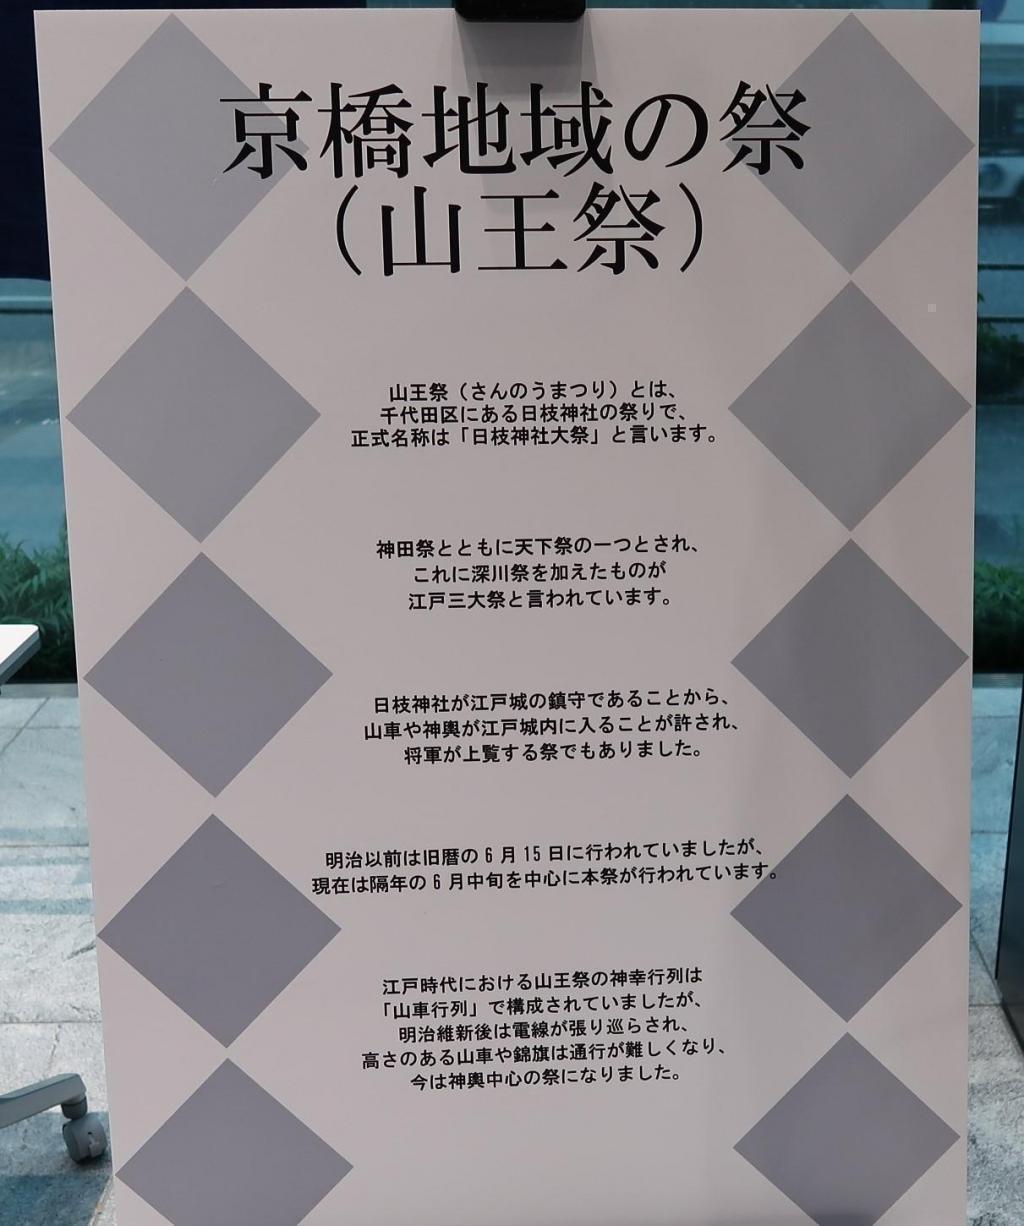 京橋地域の祭（山王祭） 行ってきました！
「京橋 ひと・こと・とき(刻)つなぎ 2023・初夏」
山王祭まであと一年！